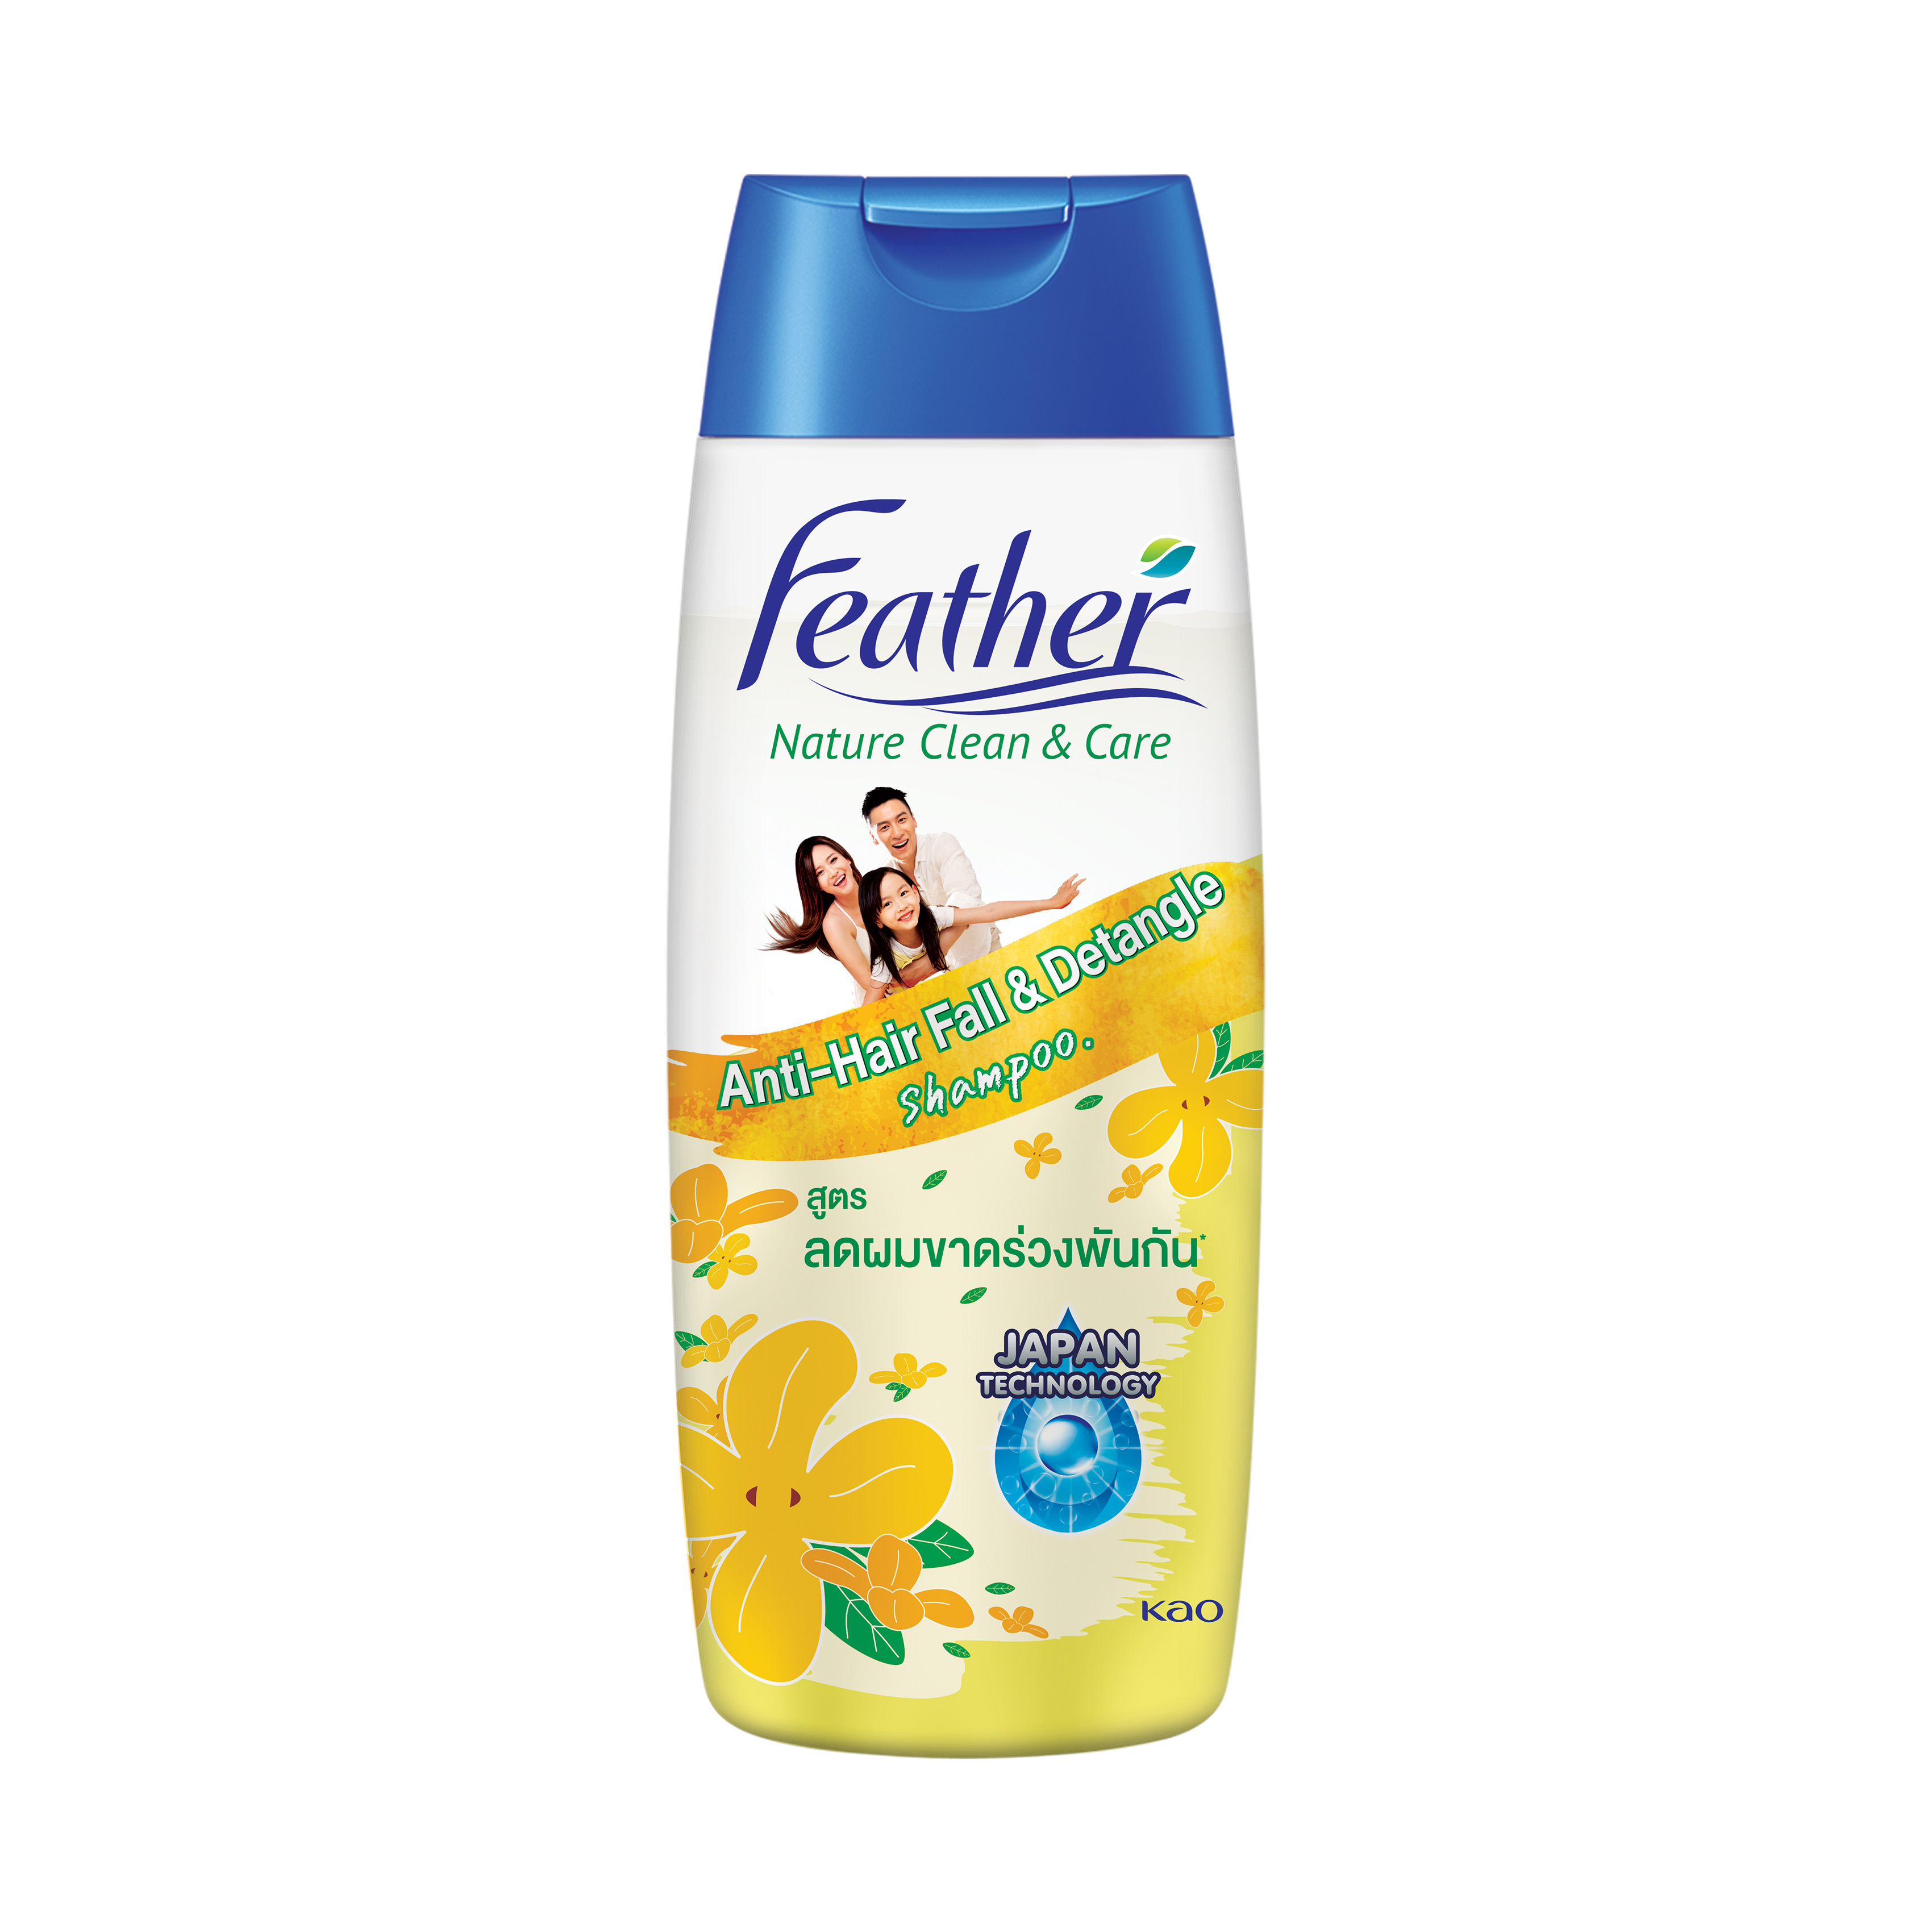 Kao Thailand | Product catalogue | Anti-Hair Fall & Detangle Shampoo  (Rosehip Extract) 340ml